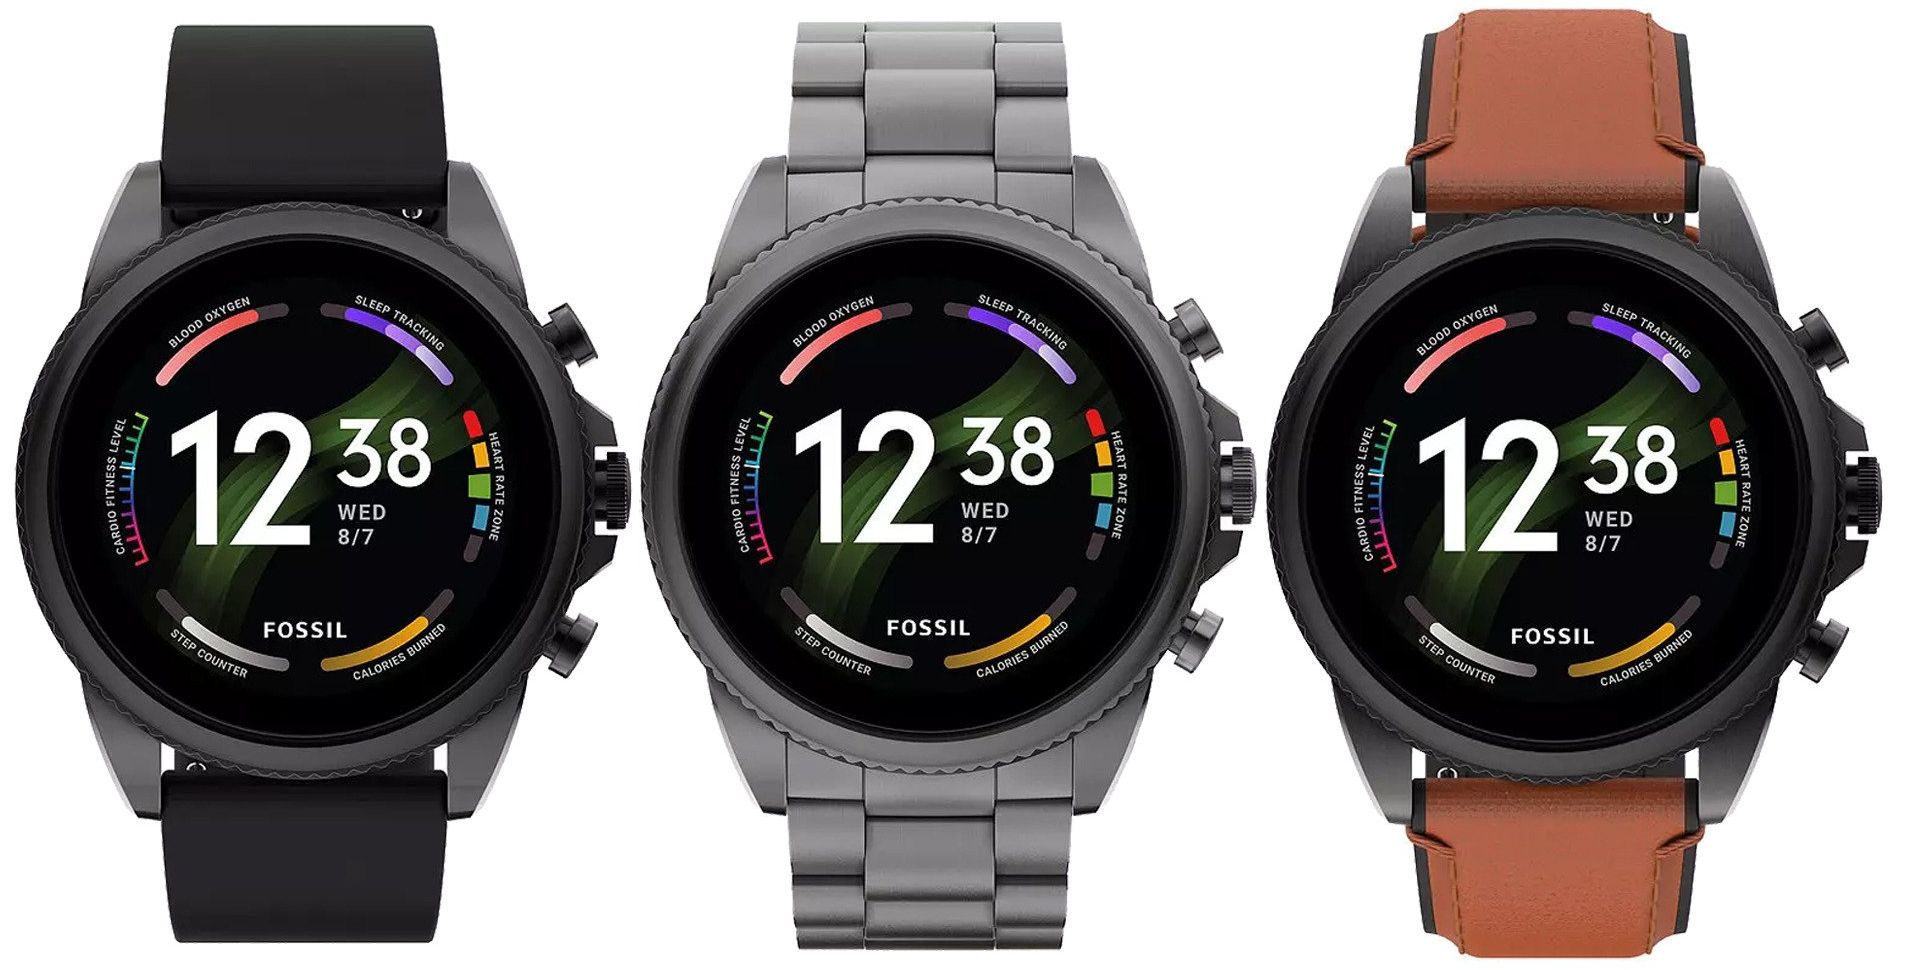 Fossil Gen 6 su Amazon: smartwatch con chip Snapdragon Wear 4100+, sensore SpO2, NFC e Wear OS al prezzo scontato di 136€.